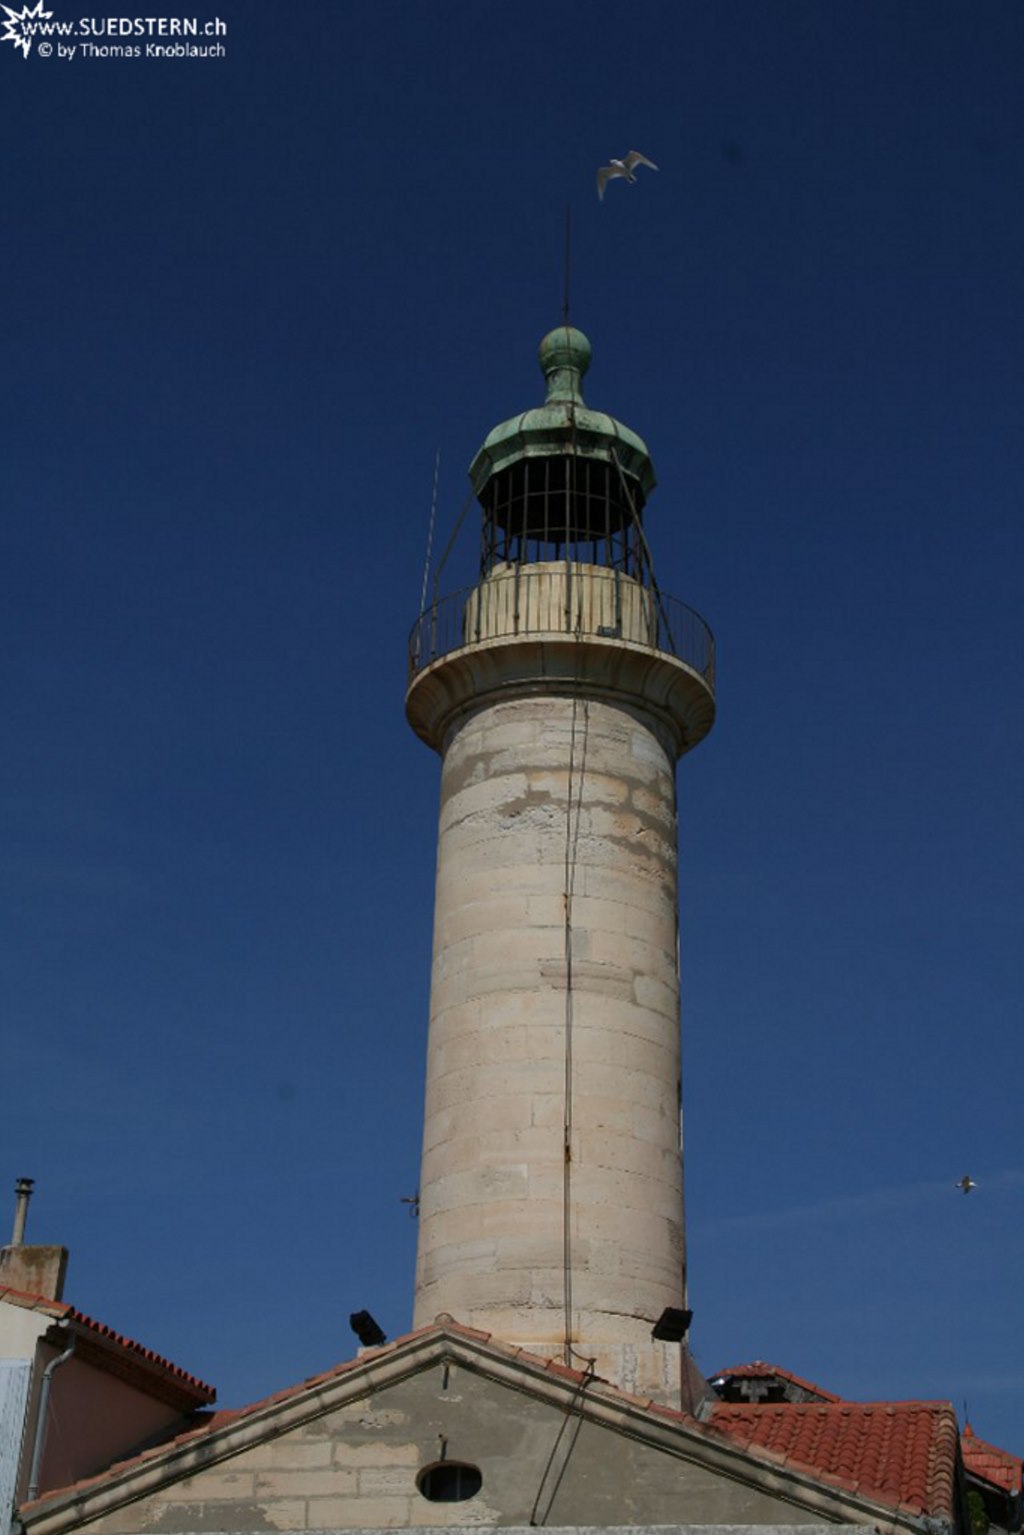 2008-08-27 - Lighthouse Le grau du roi, france